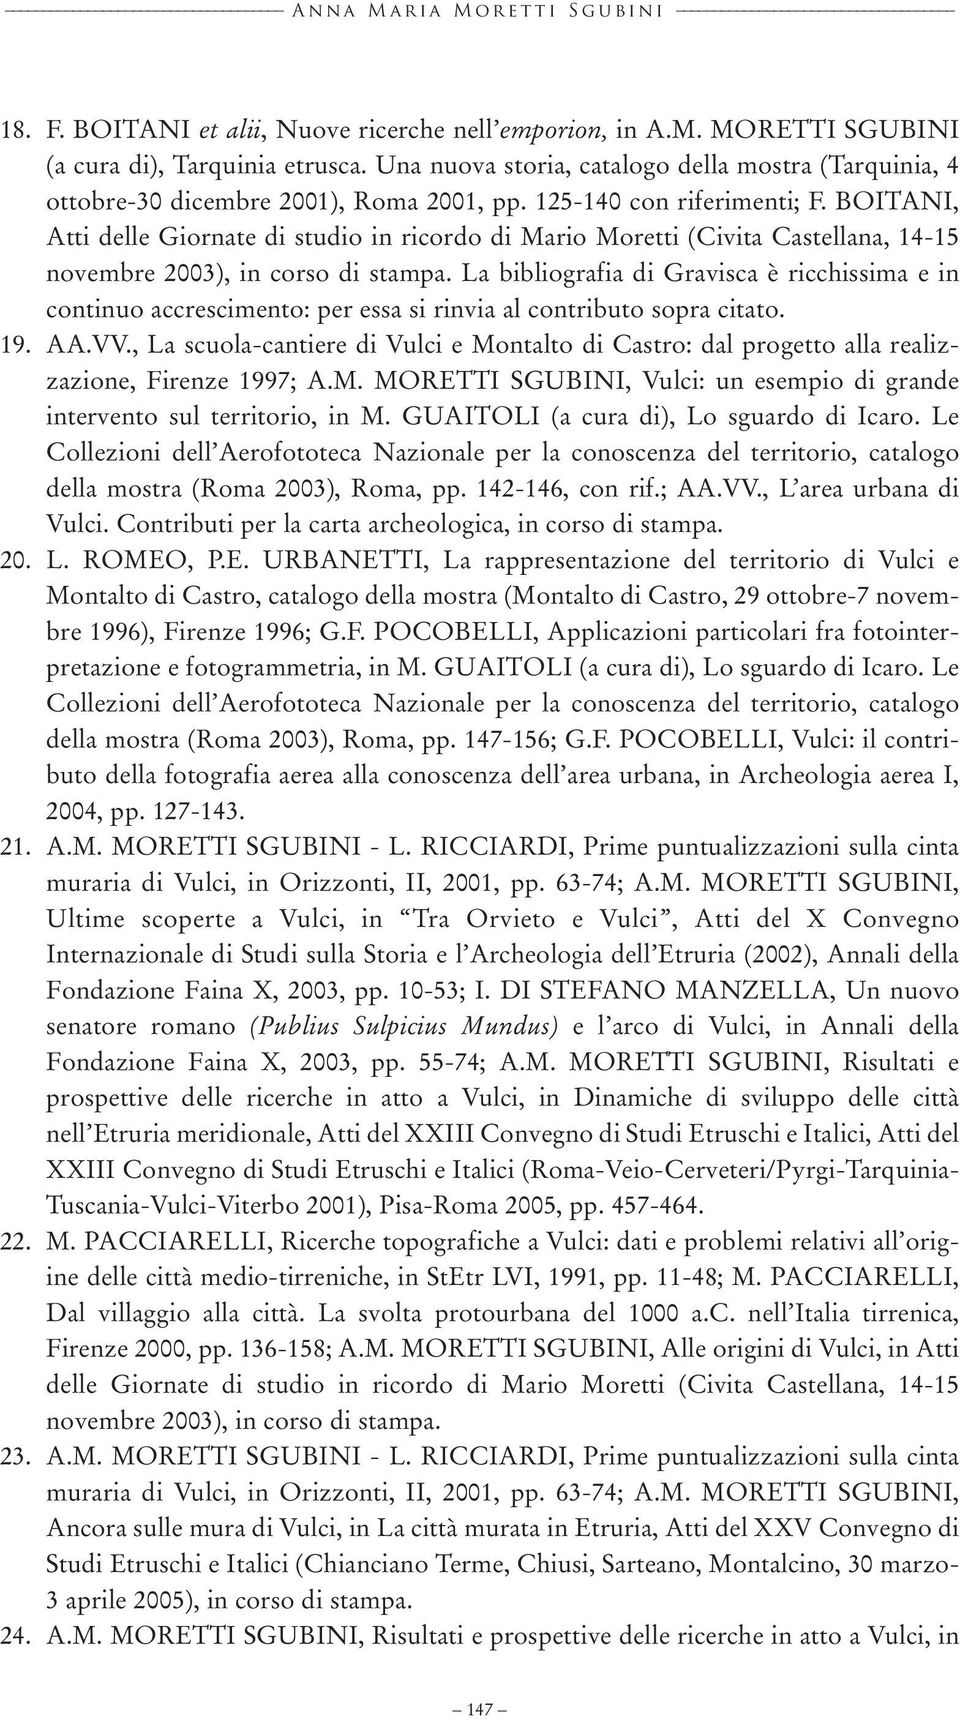 BOITANI, Atti delle Giornate di studio in ricordo di Mario Moretti (Civita Castellana, 14-15 novembre 2003), in corso di stampa.